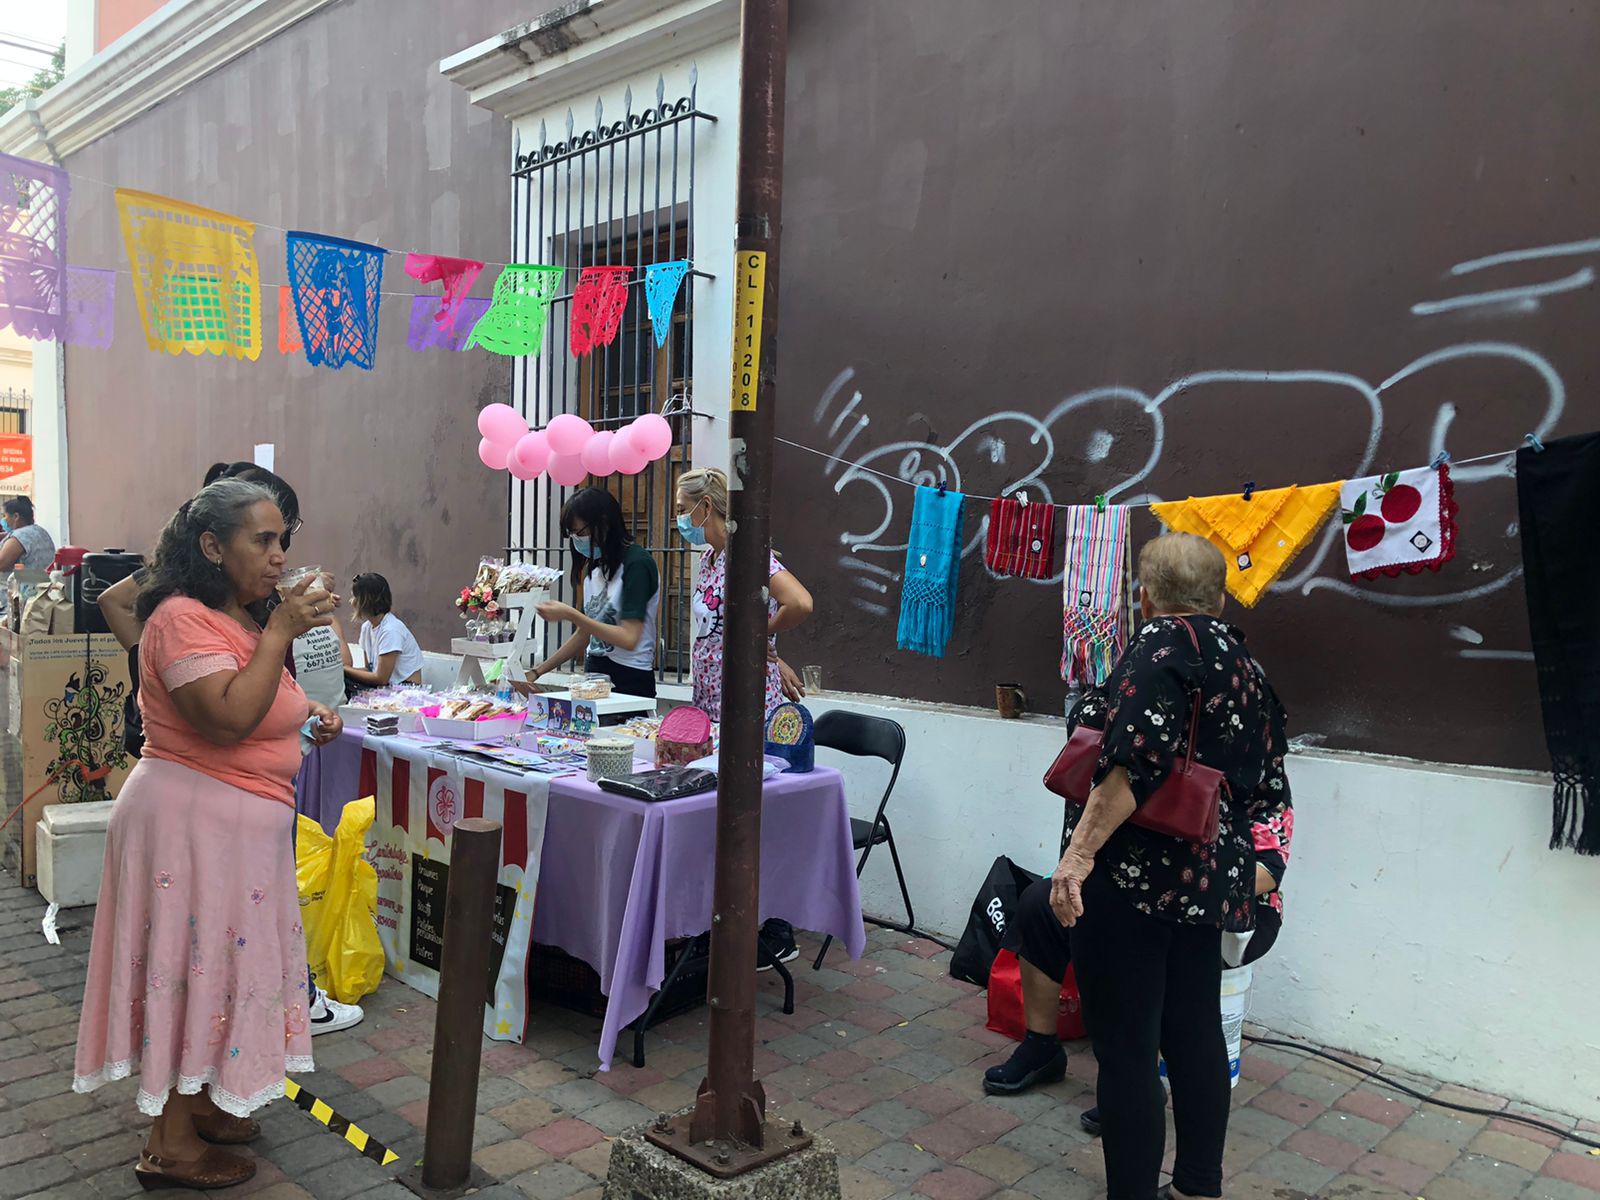 $!Programa Paseo de las Artes festeja su décimo aniversario, en Culiacán